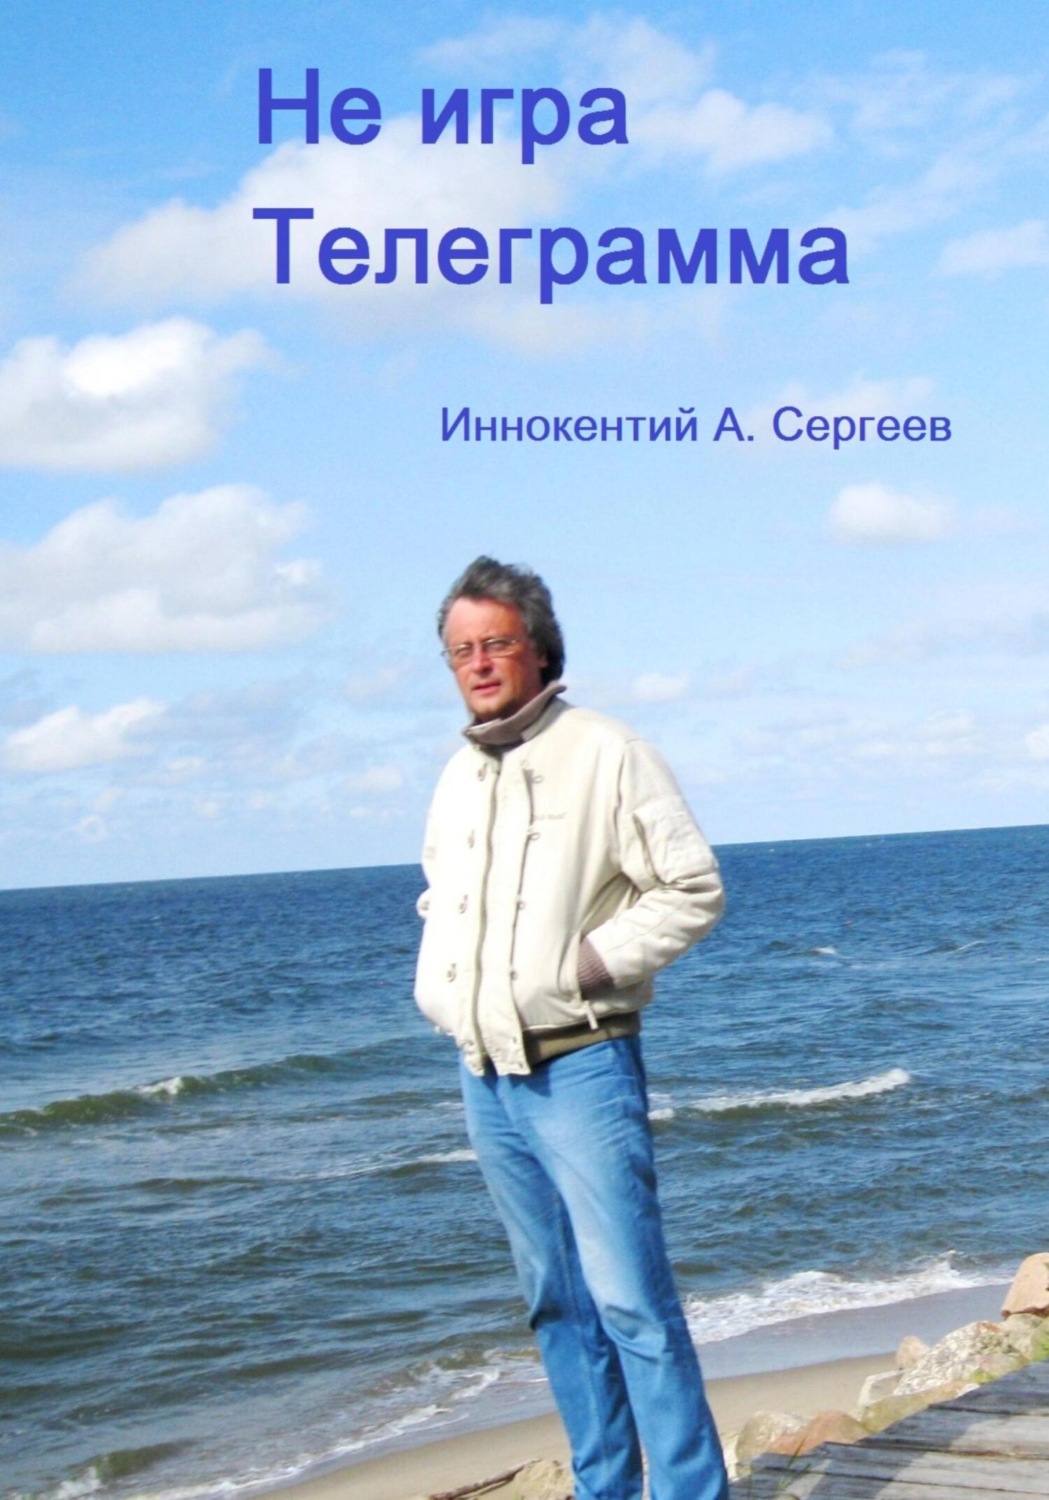 Книги в телеграмме на русском бесплатно фото 17